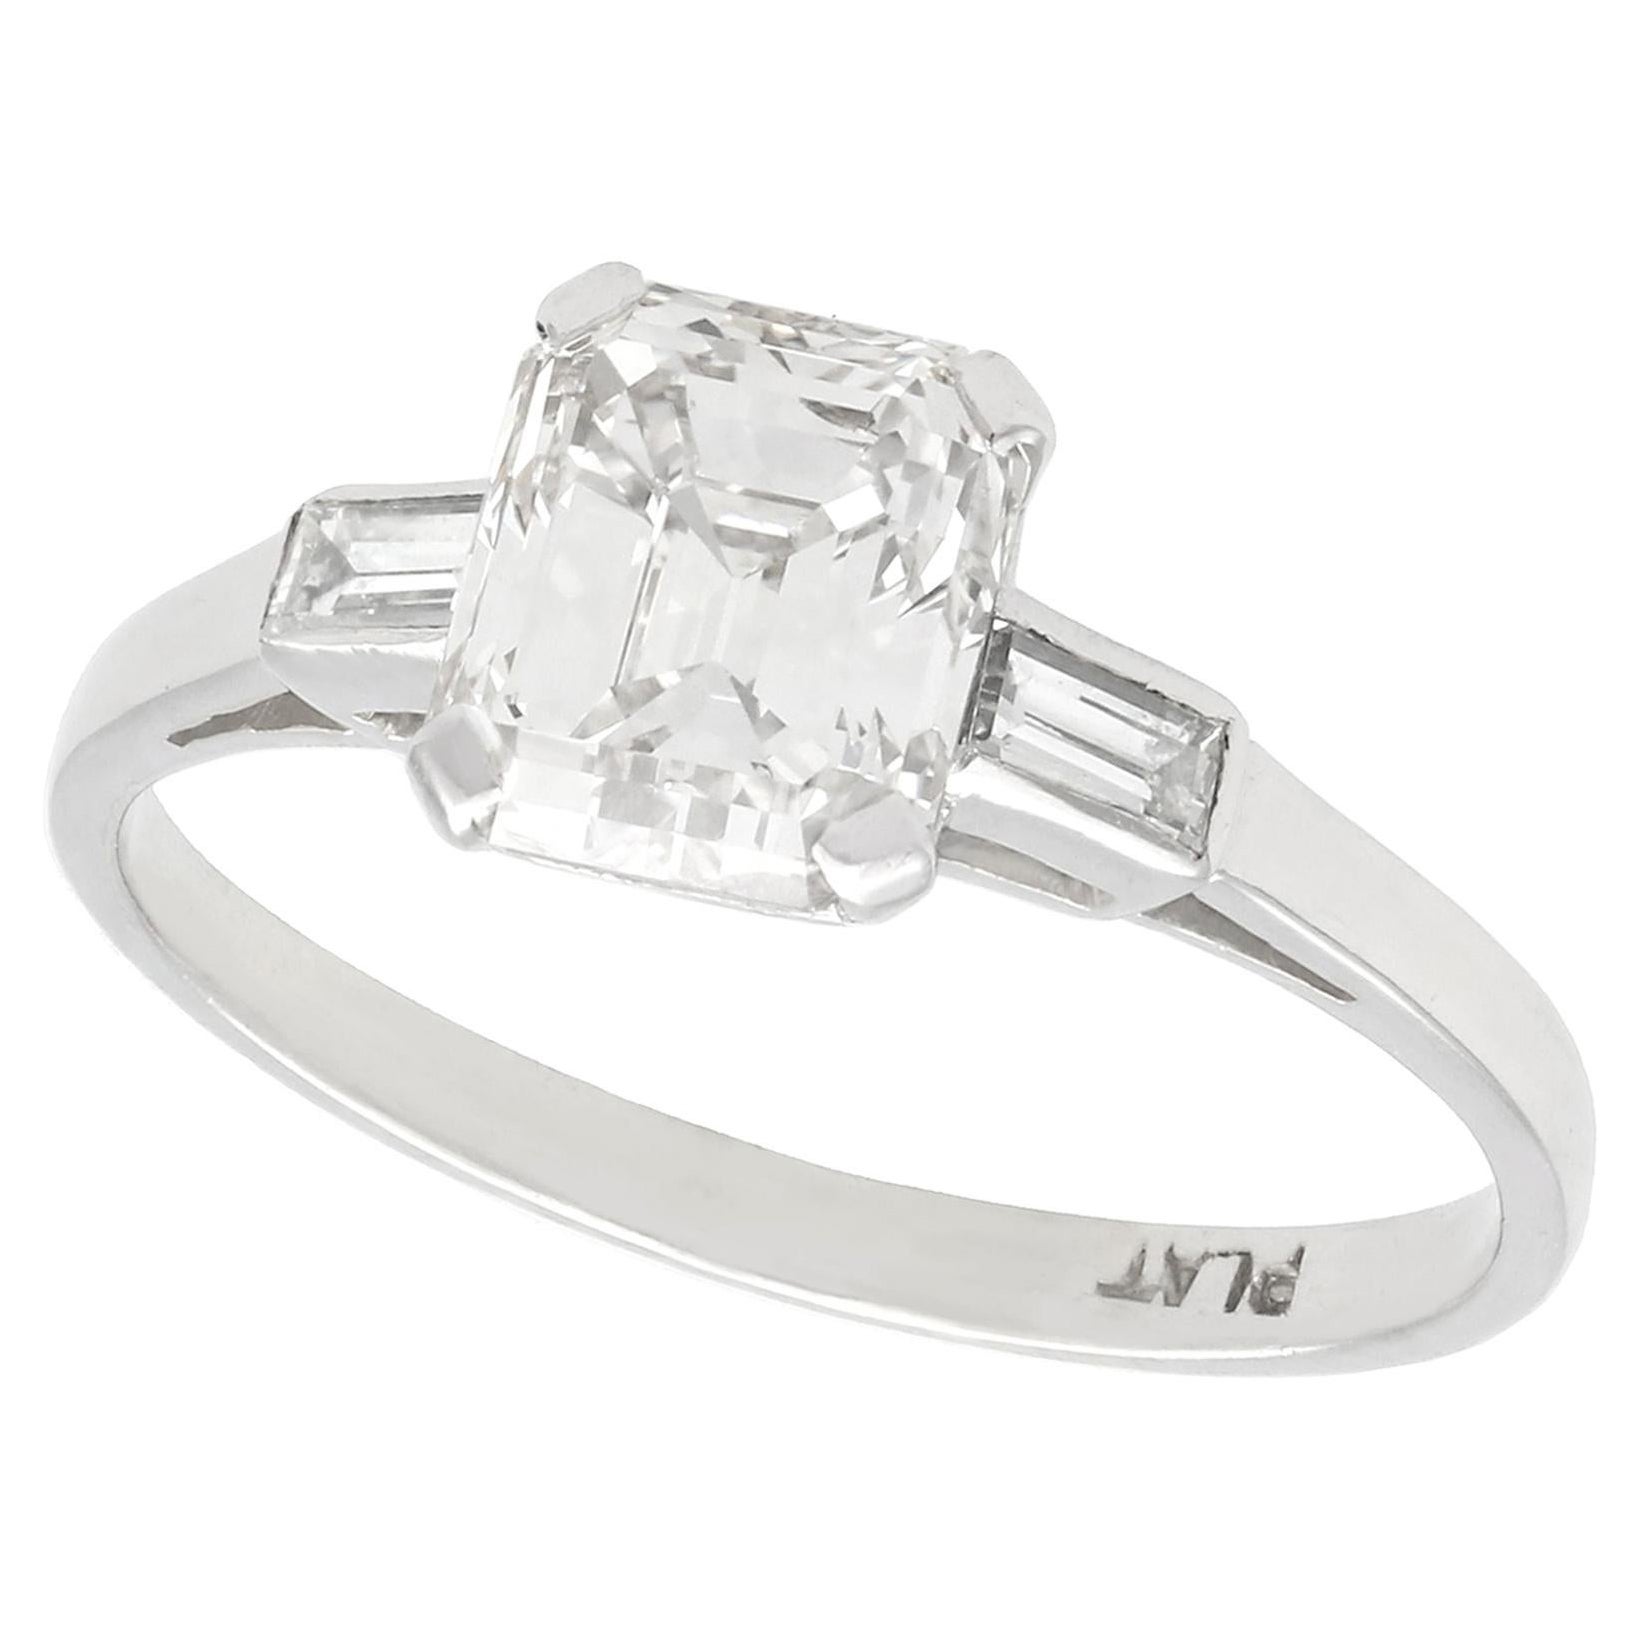 1930s Antique 1.11 Carat Emerald Cut Diamond and Platinum Solitaire Ring